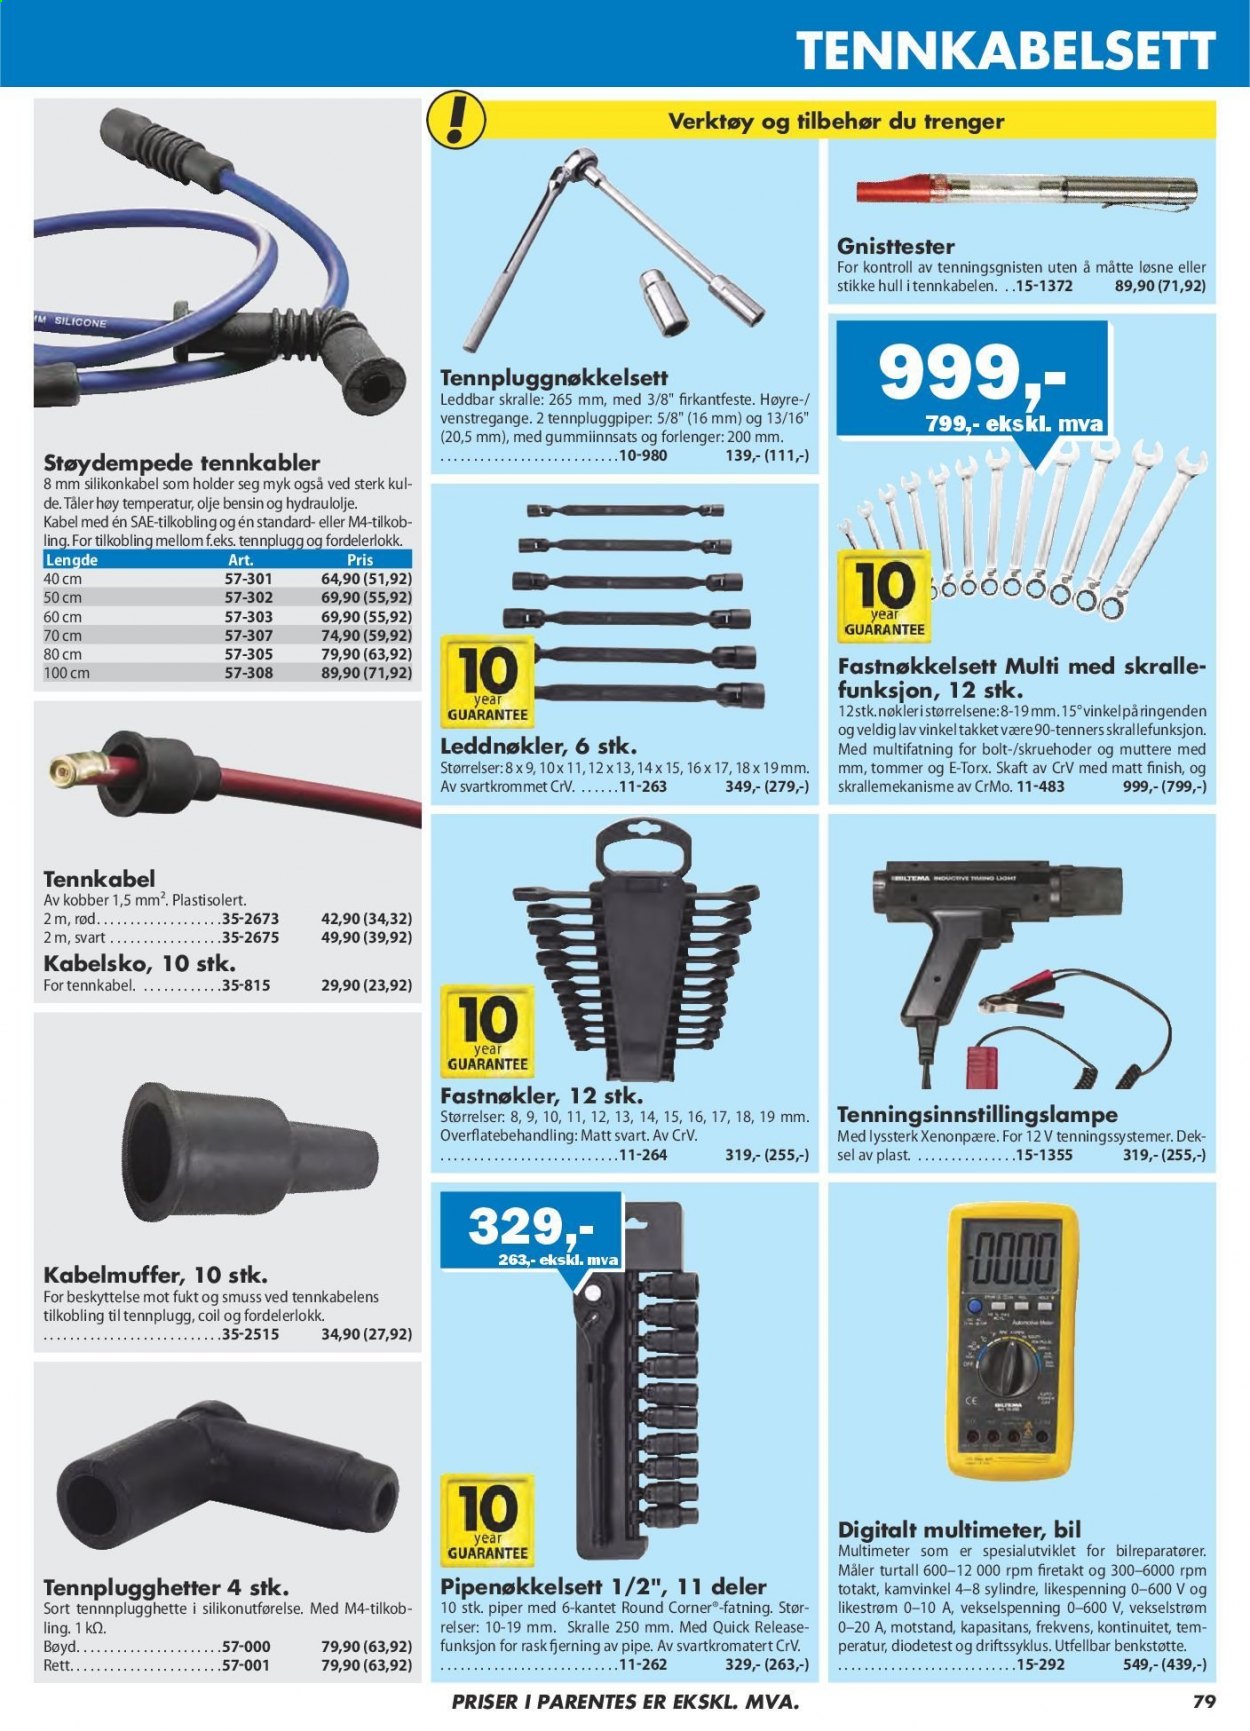 thumbnail - Kundeavis Biltema - Produkter fra tilbudsaviser - xenonpære, verktøy. Side 79.